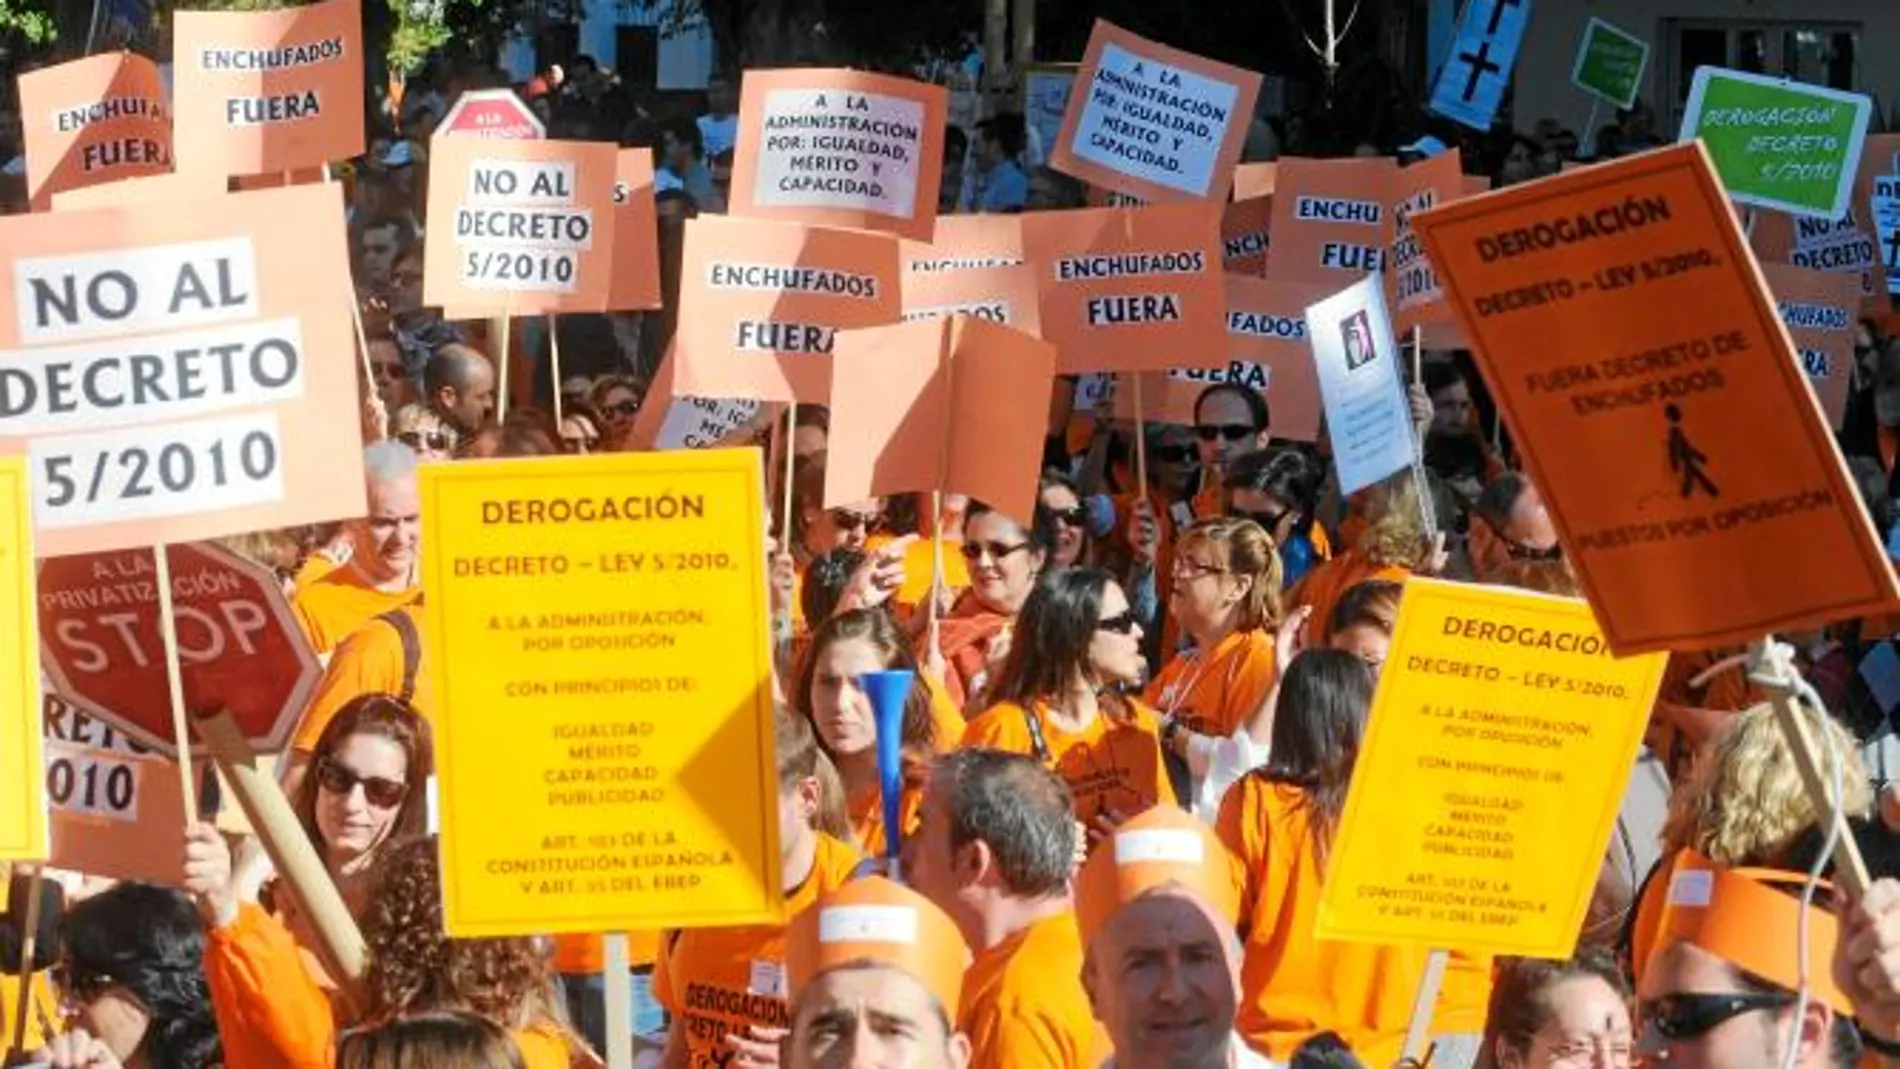 Los funcionarios siguen sumando victorias ante la pasividad de la Junta de Andalucía, que no se mueve de sus posiciones